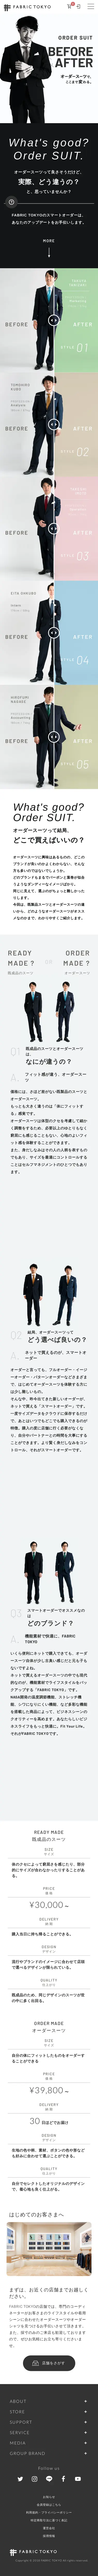 キャプチャ画面 会社名:株式会社FABRIC TOKYOプロジェクト名:オーダースーツ Before&After 画面名:B デバイス名:SPカテゴリ:アパレル・ファッションタグ:B,SP